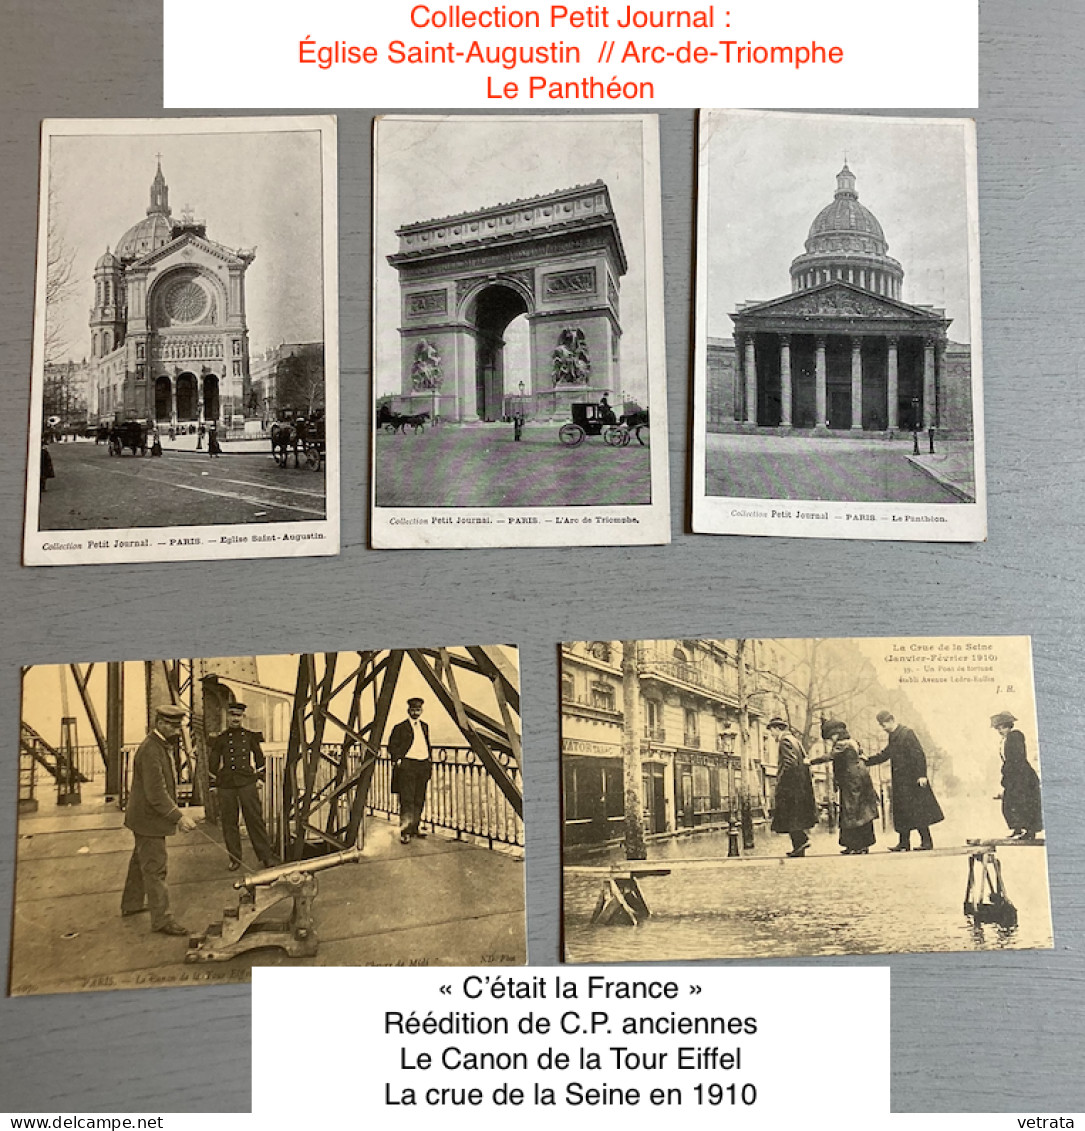 PARIS : 48 Cartes Postales (40 N&B - 8 Couleurs / 27 avec correspondance dont 25 sont affranchies / 21 n’ont pas circulé